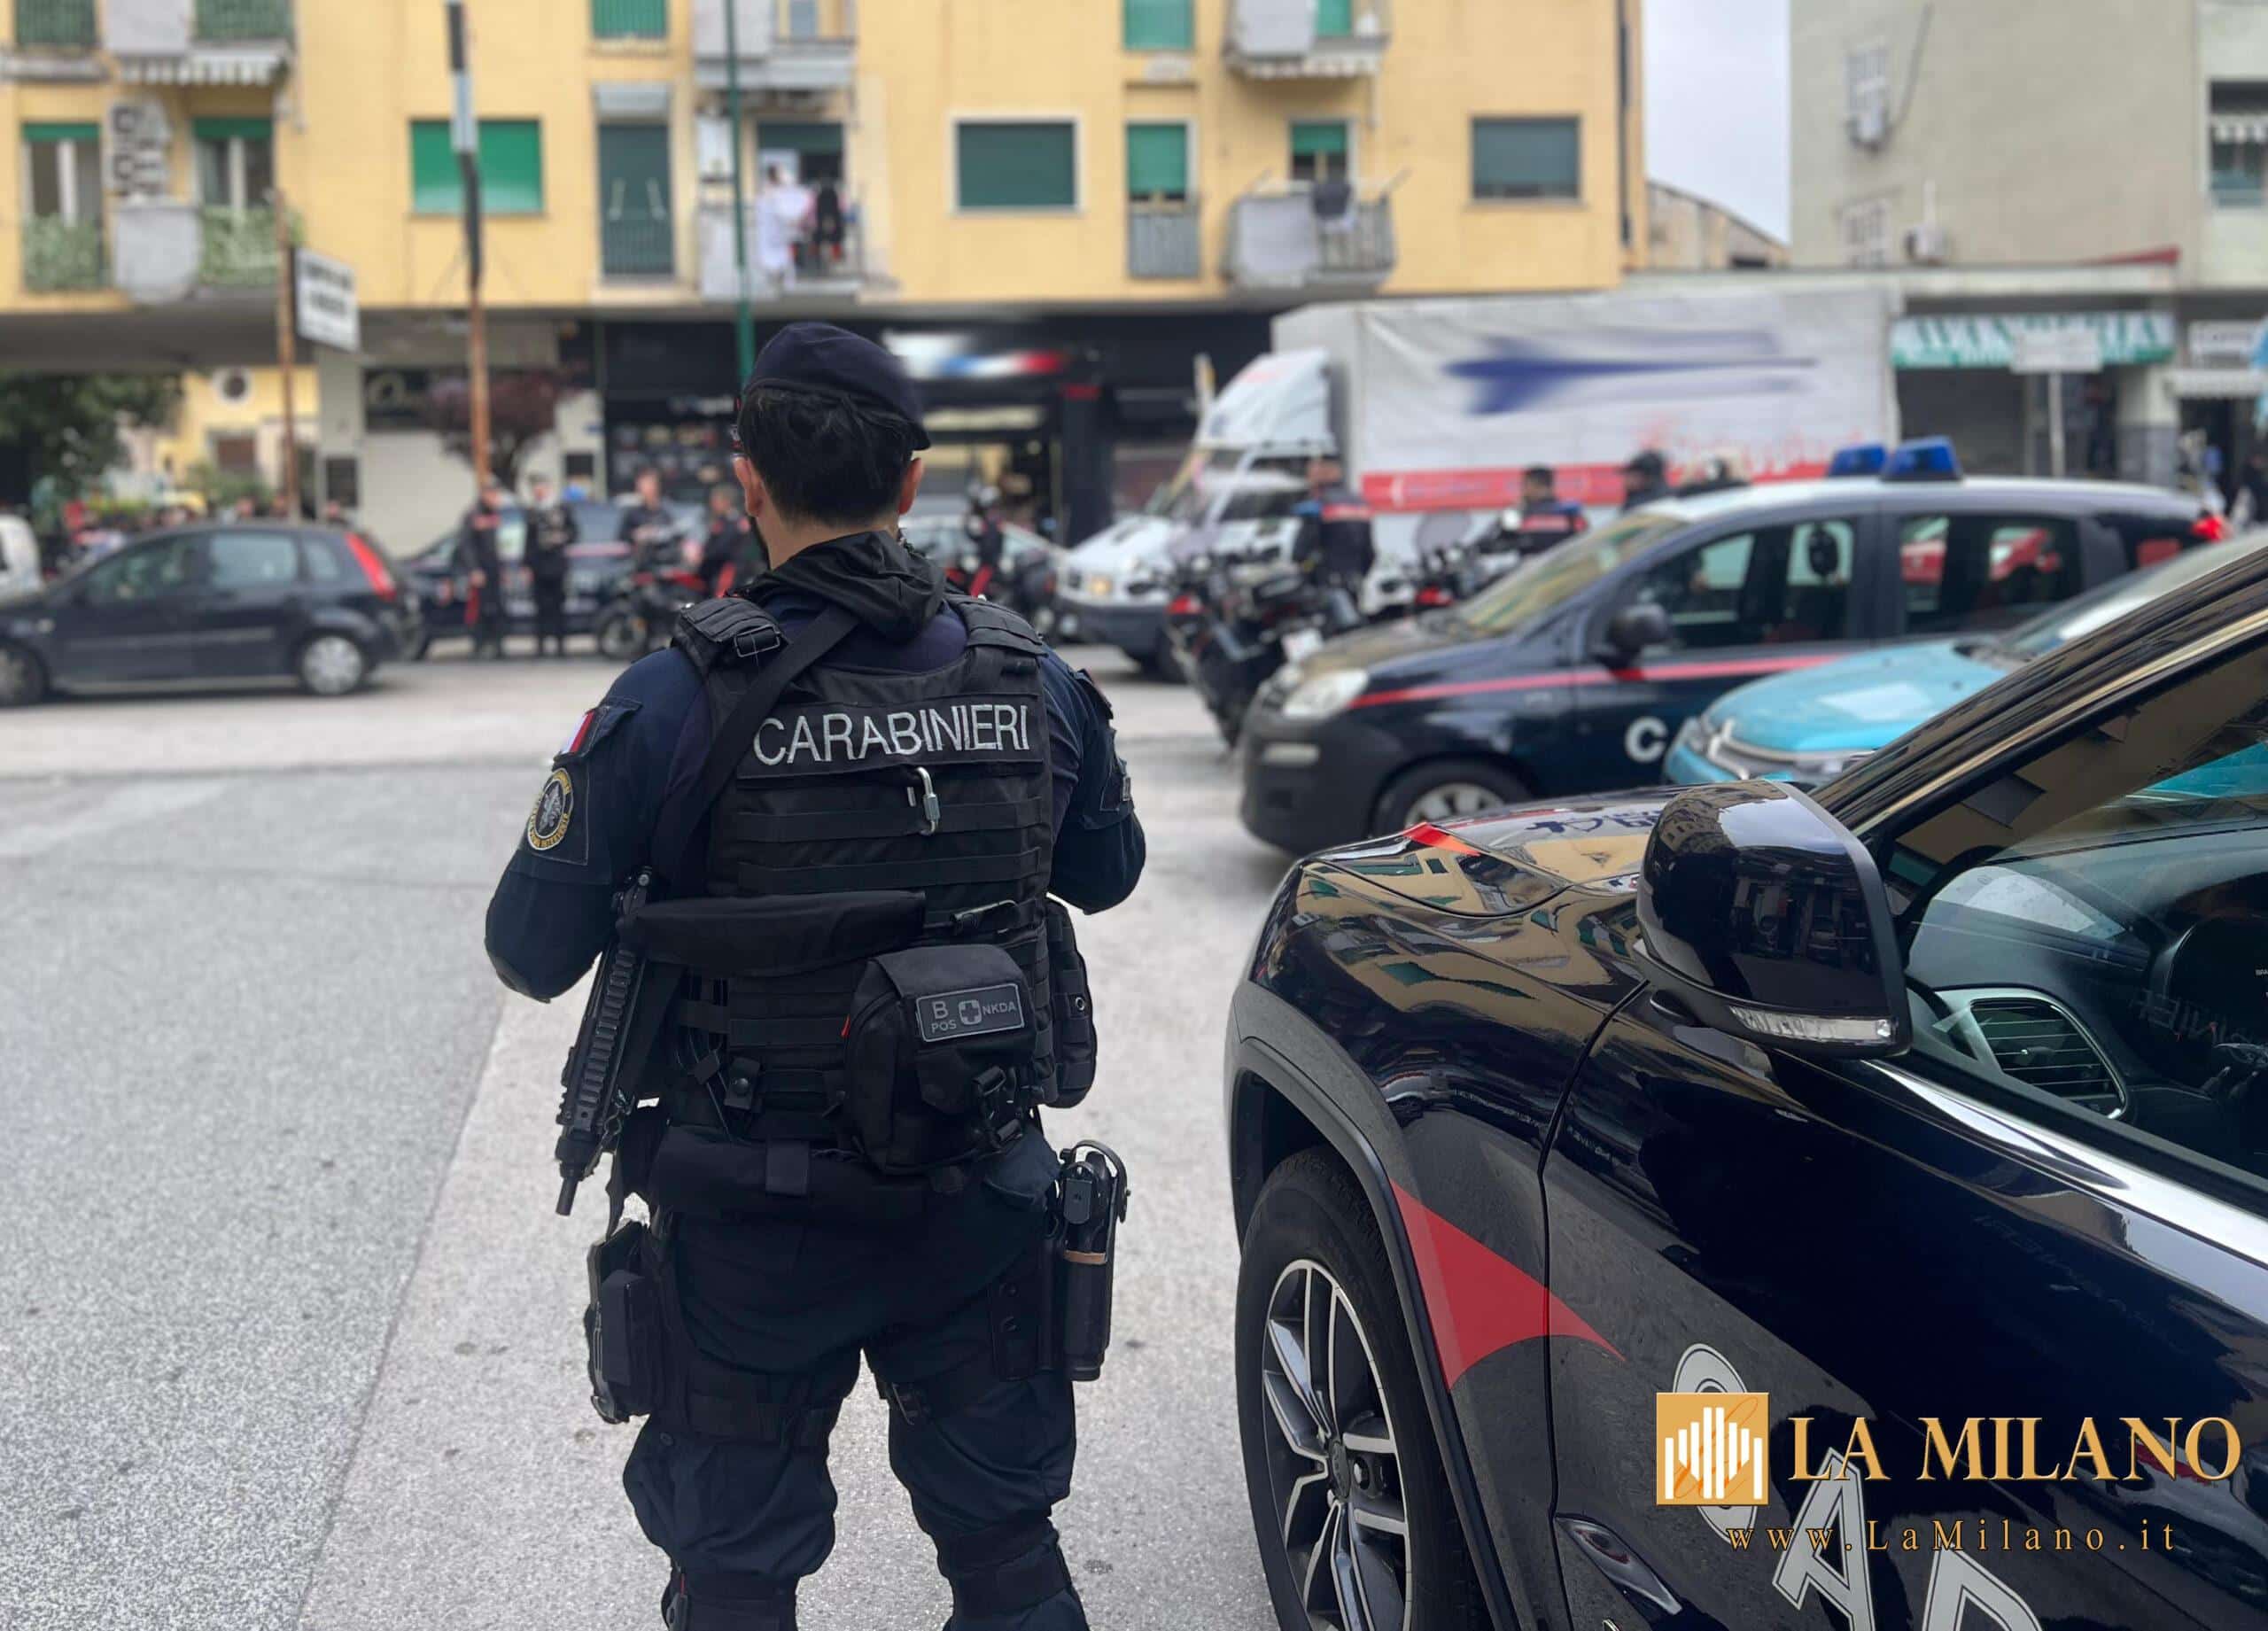 Napoli: controlli dei Carabinieri, sicurezza nel quartiere e presenza visibile, due persone arrestate e 3 denunciate.